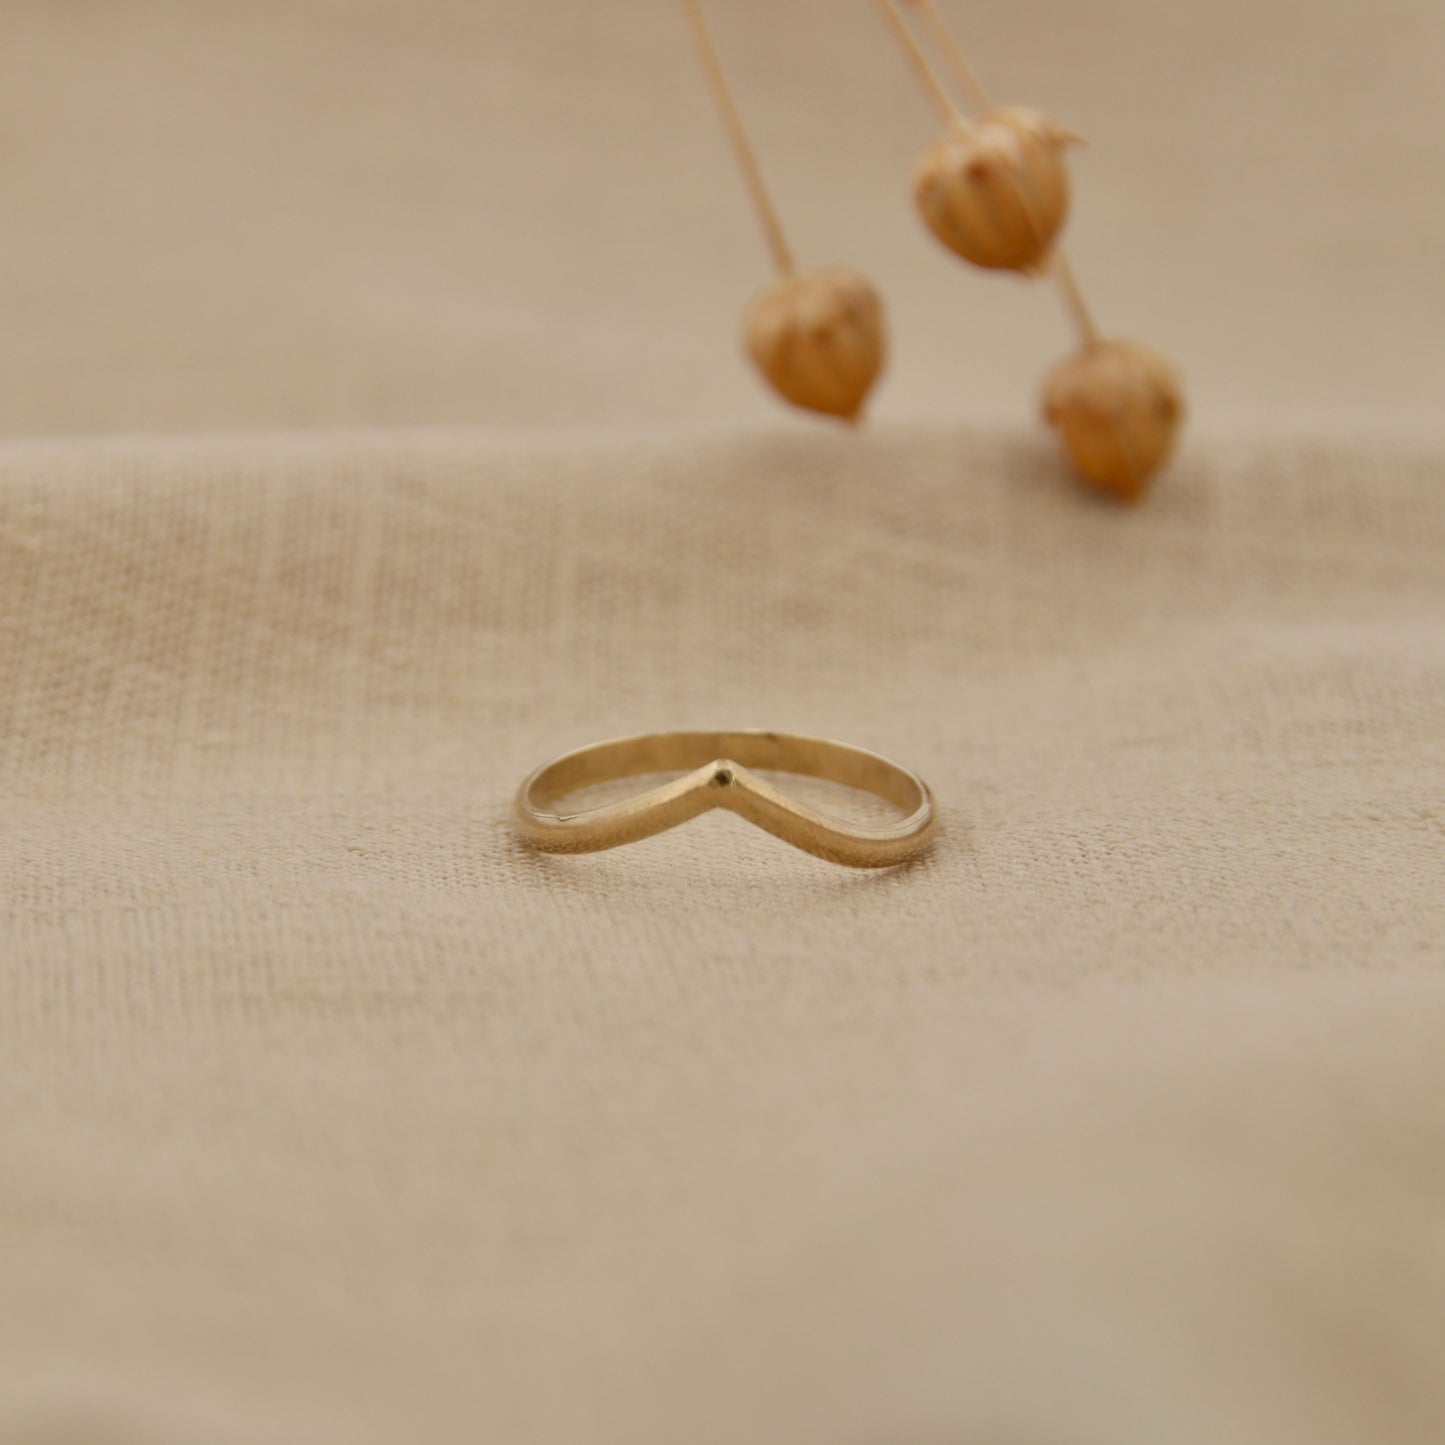 Halfronde Wishbone Ring - 2.0 x 1.0 mm - 14k Geelgoud